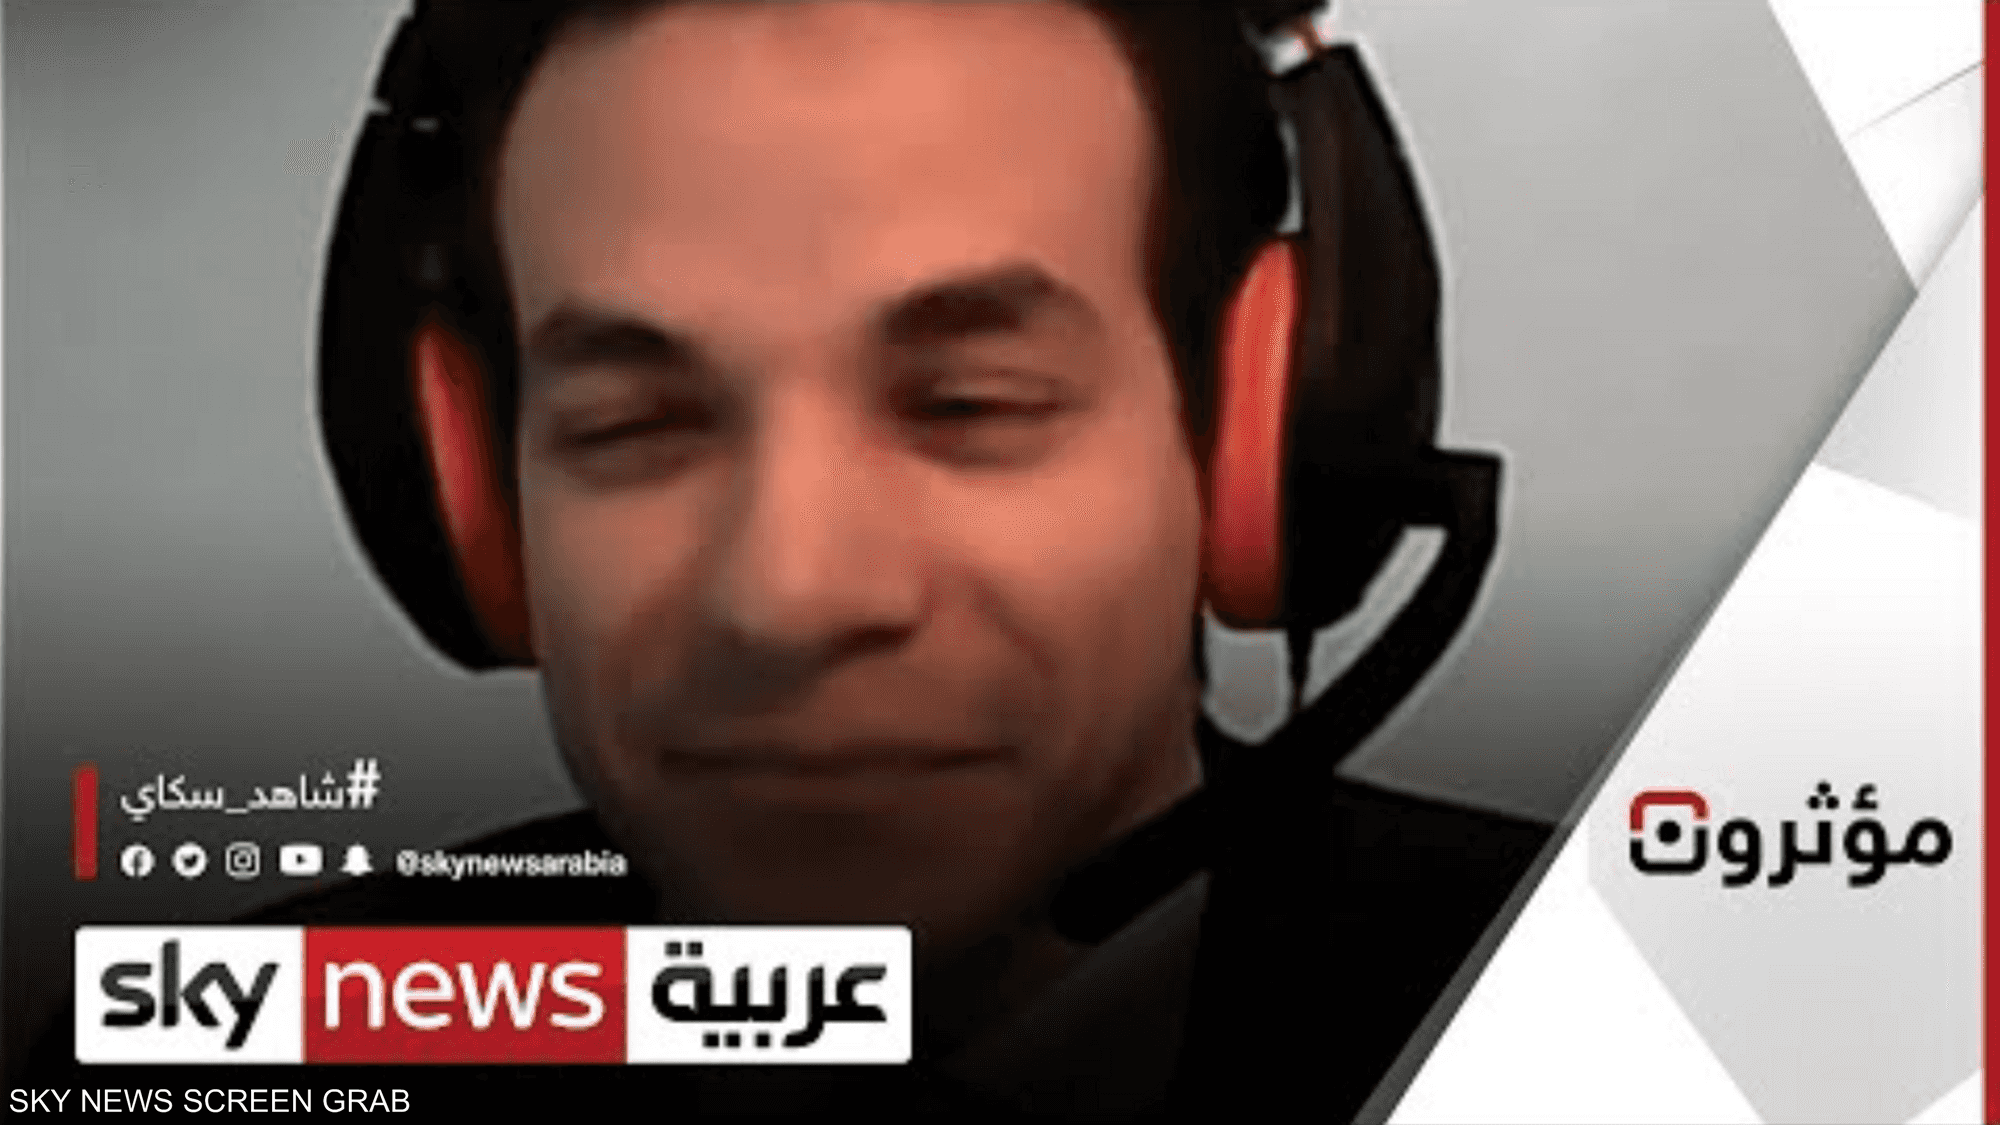 شاب مصري يتحدى فقدان بصره ليصبح صحفيا ناجحا